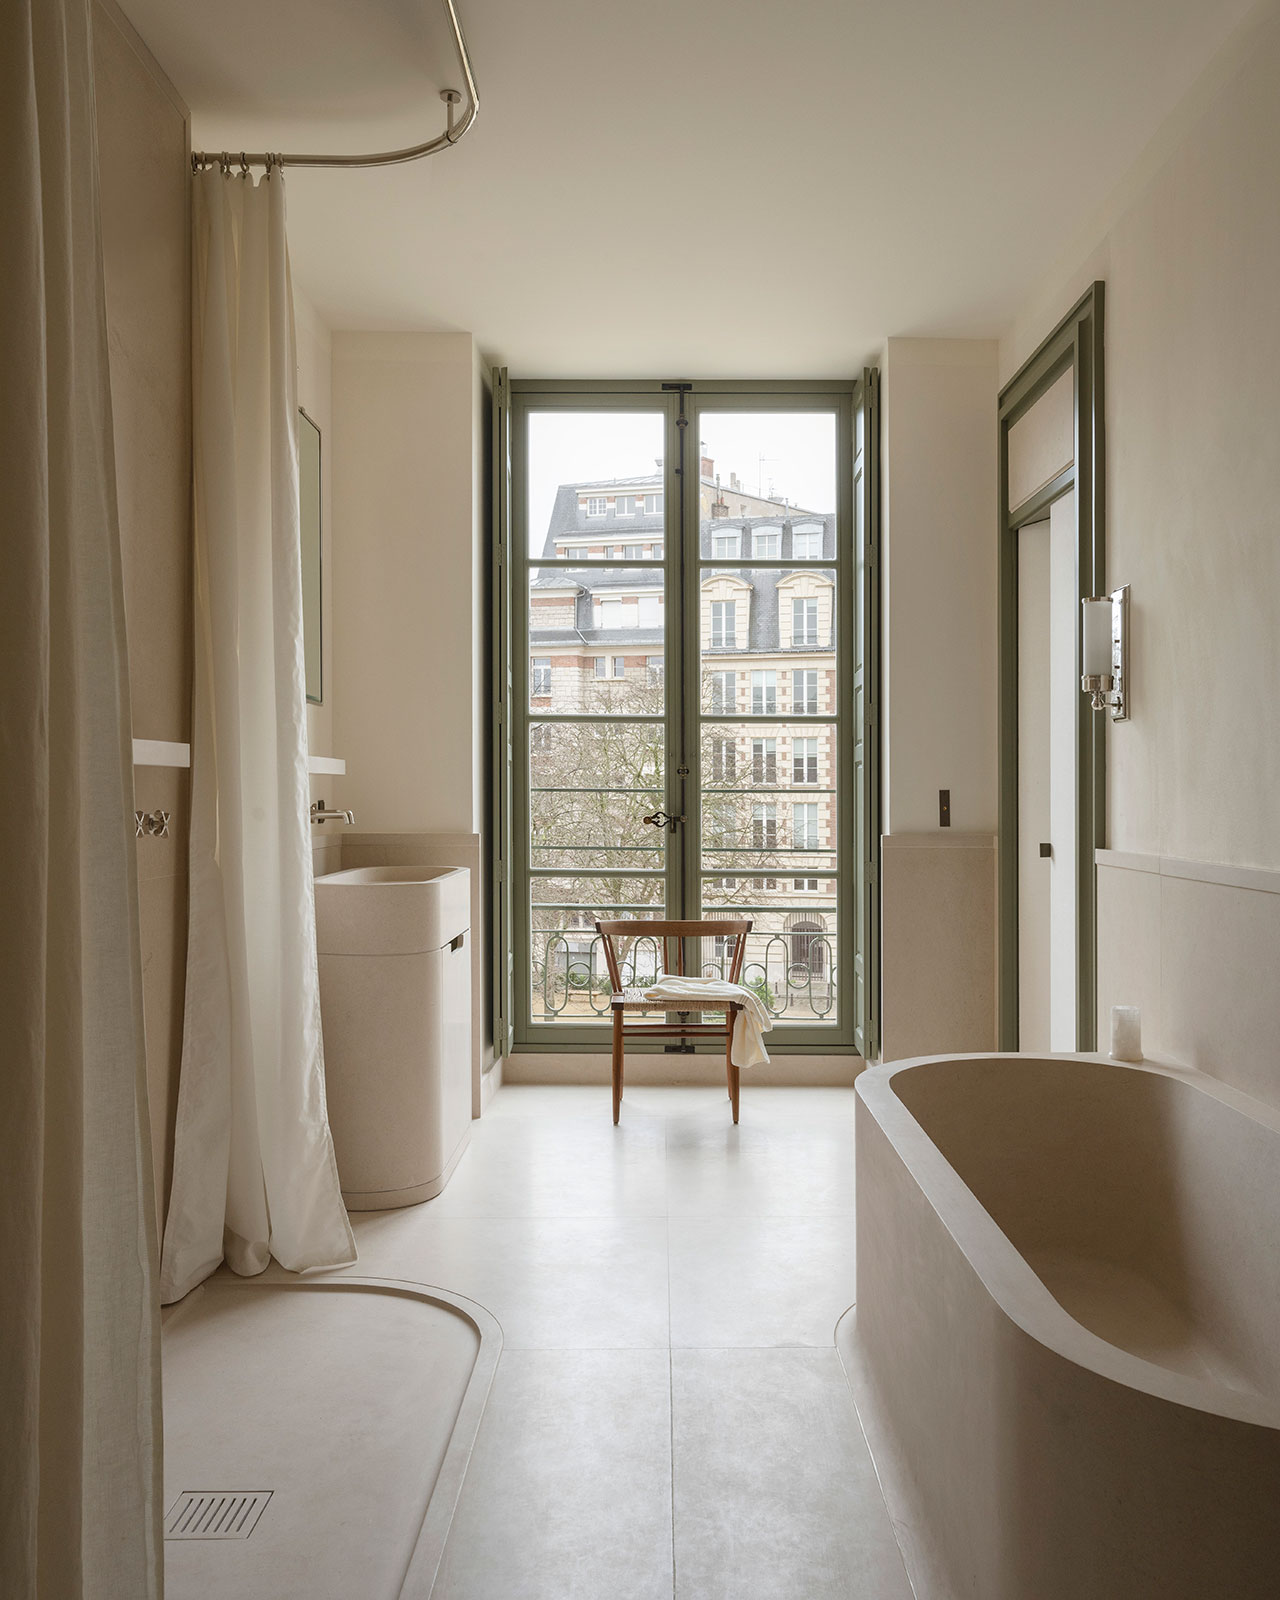 公寓装修,公寓设计案例,AFTER BACH,巴黎,复古风公寓,公寓设计,艺术公寓,JAG Gallery,Francesco Balzano